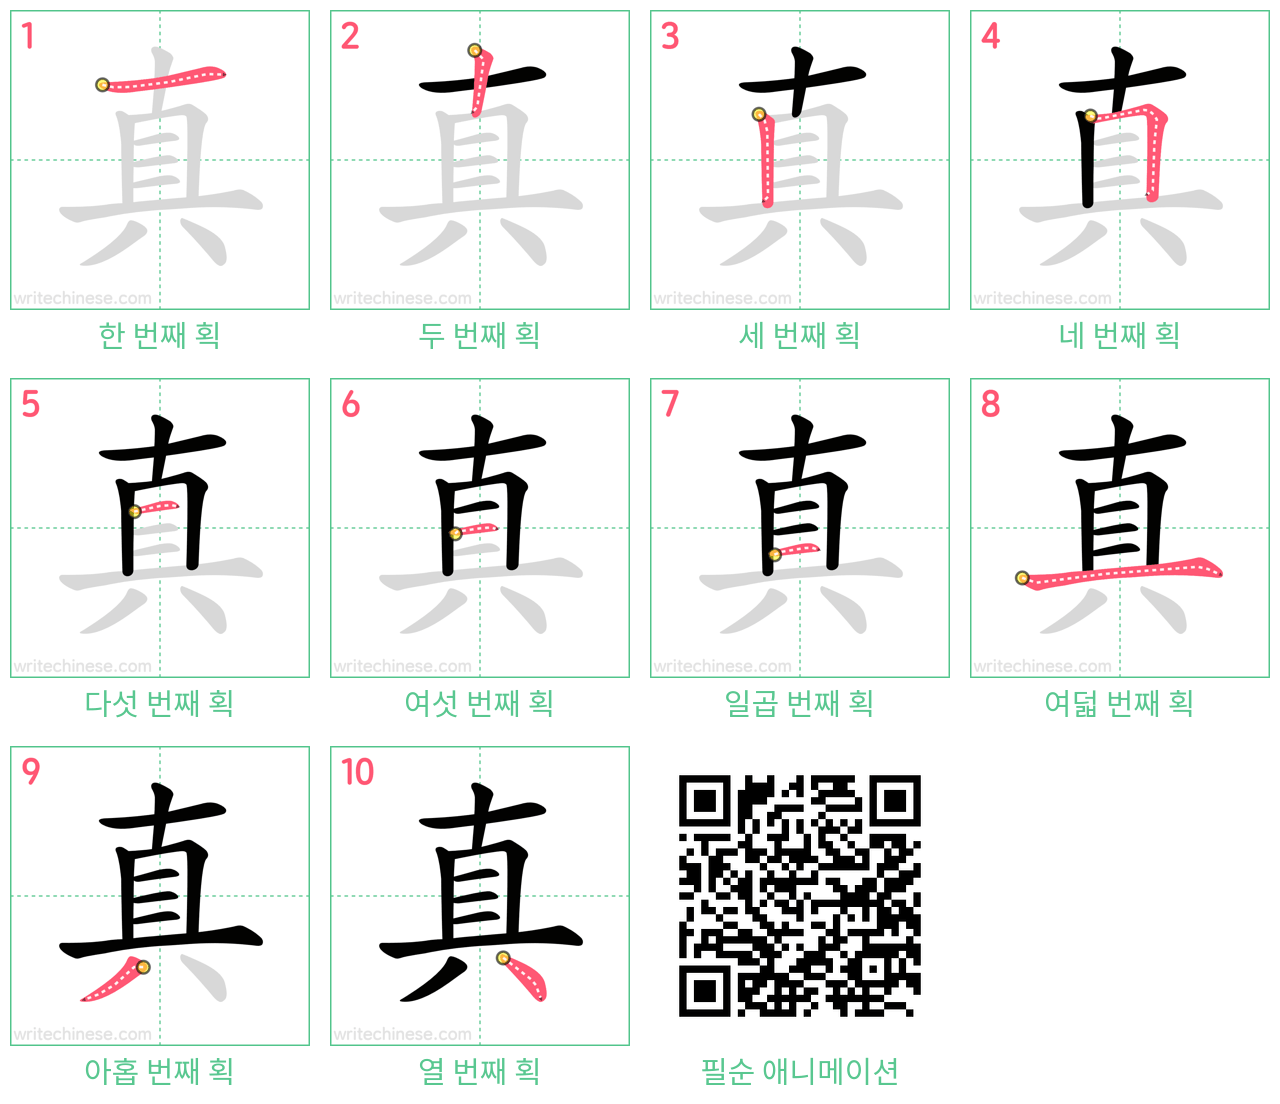 真 step-by-step stroke order diagrams